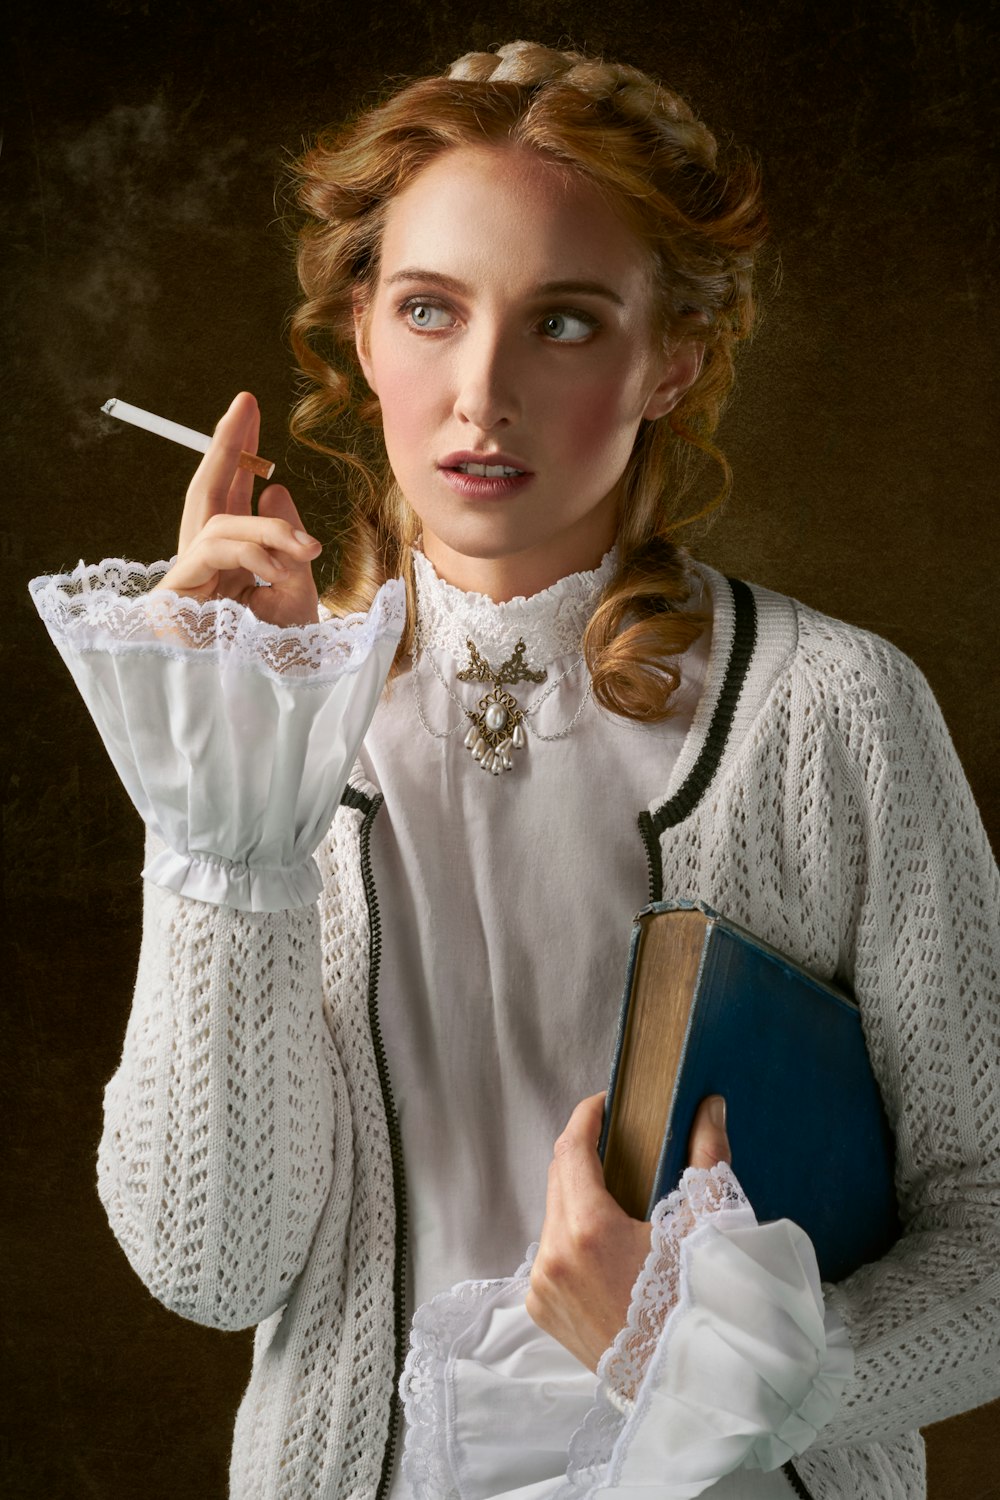 Frau mit Zigarette hält Buchfoto